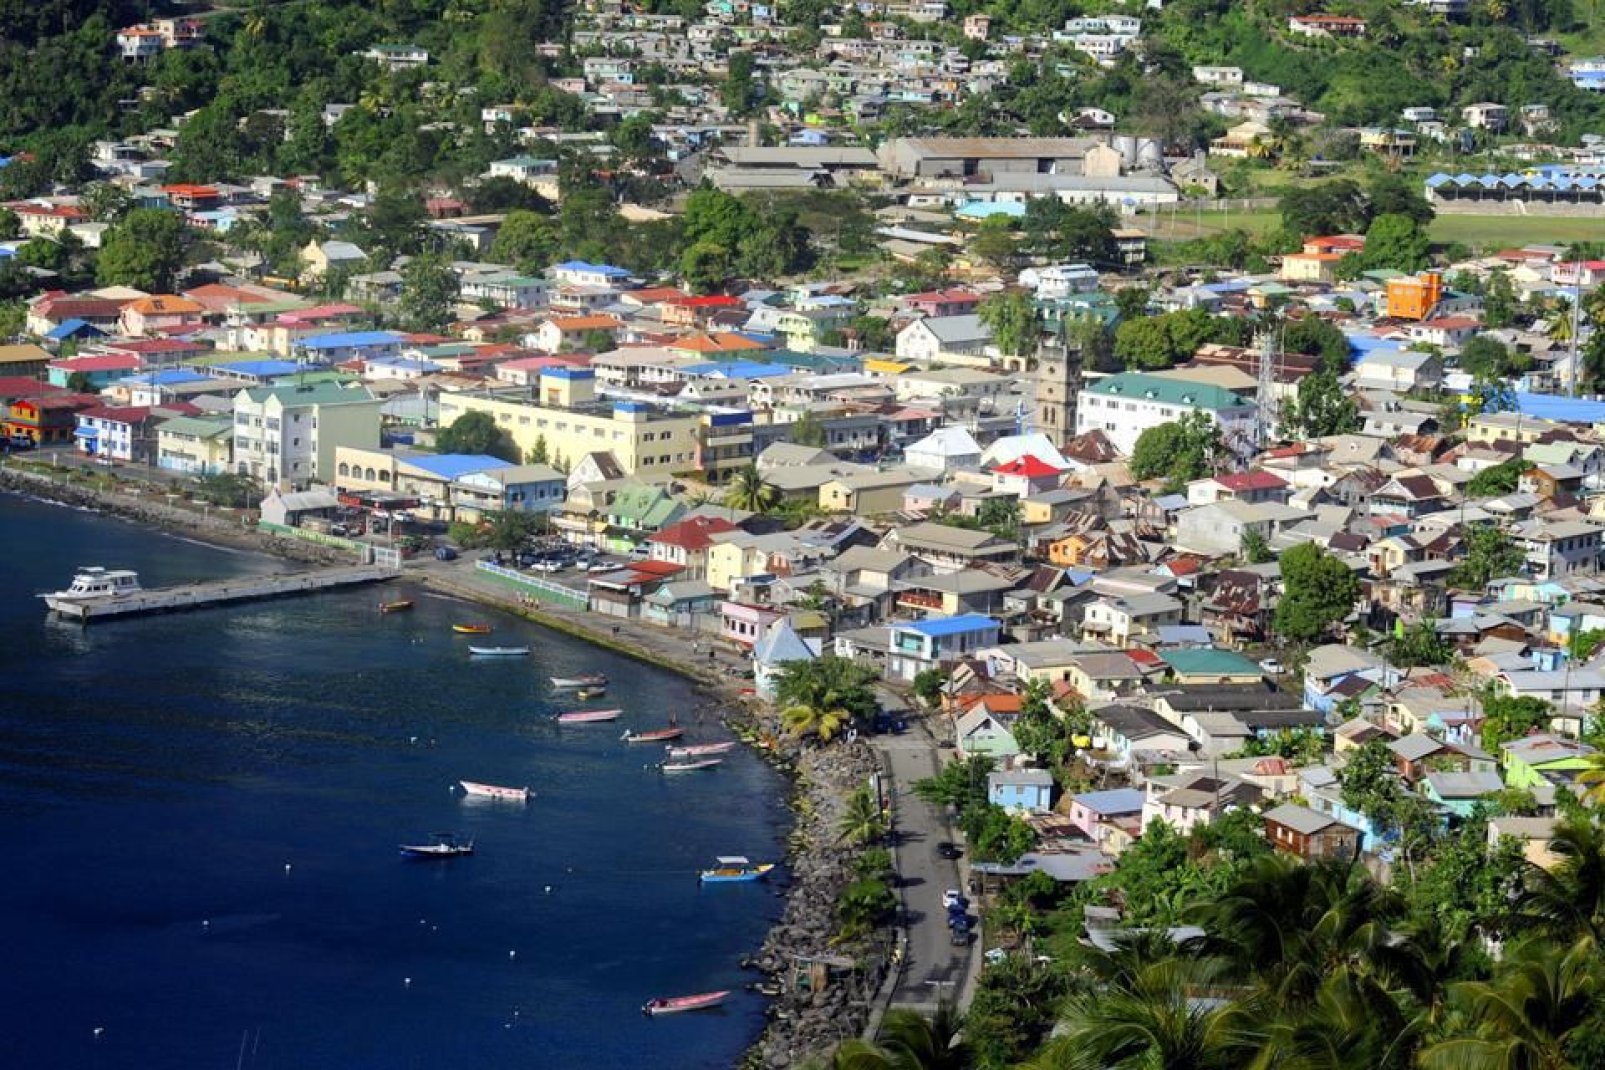 Con 13 000 habitantes, la población más antigua de Santa Lucía está considerada como una auténtica ciudad.